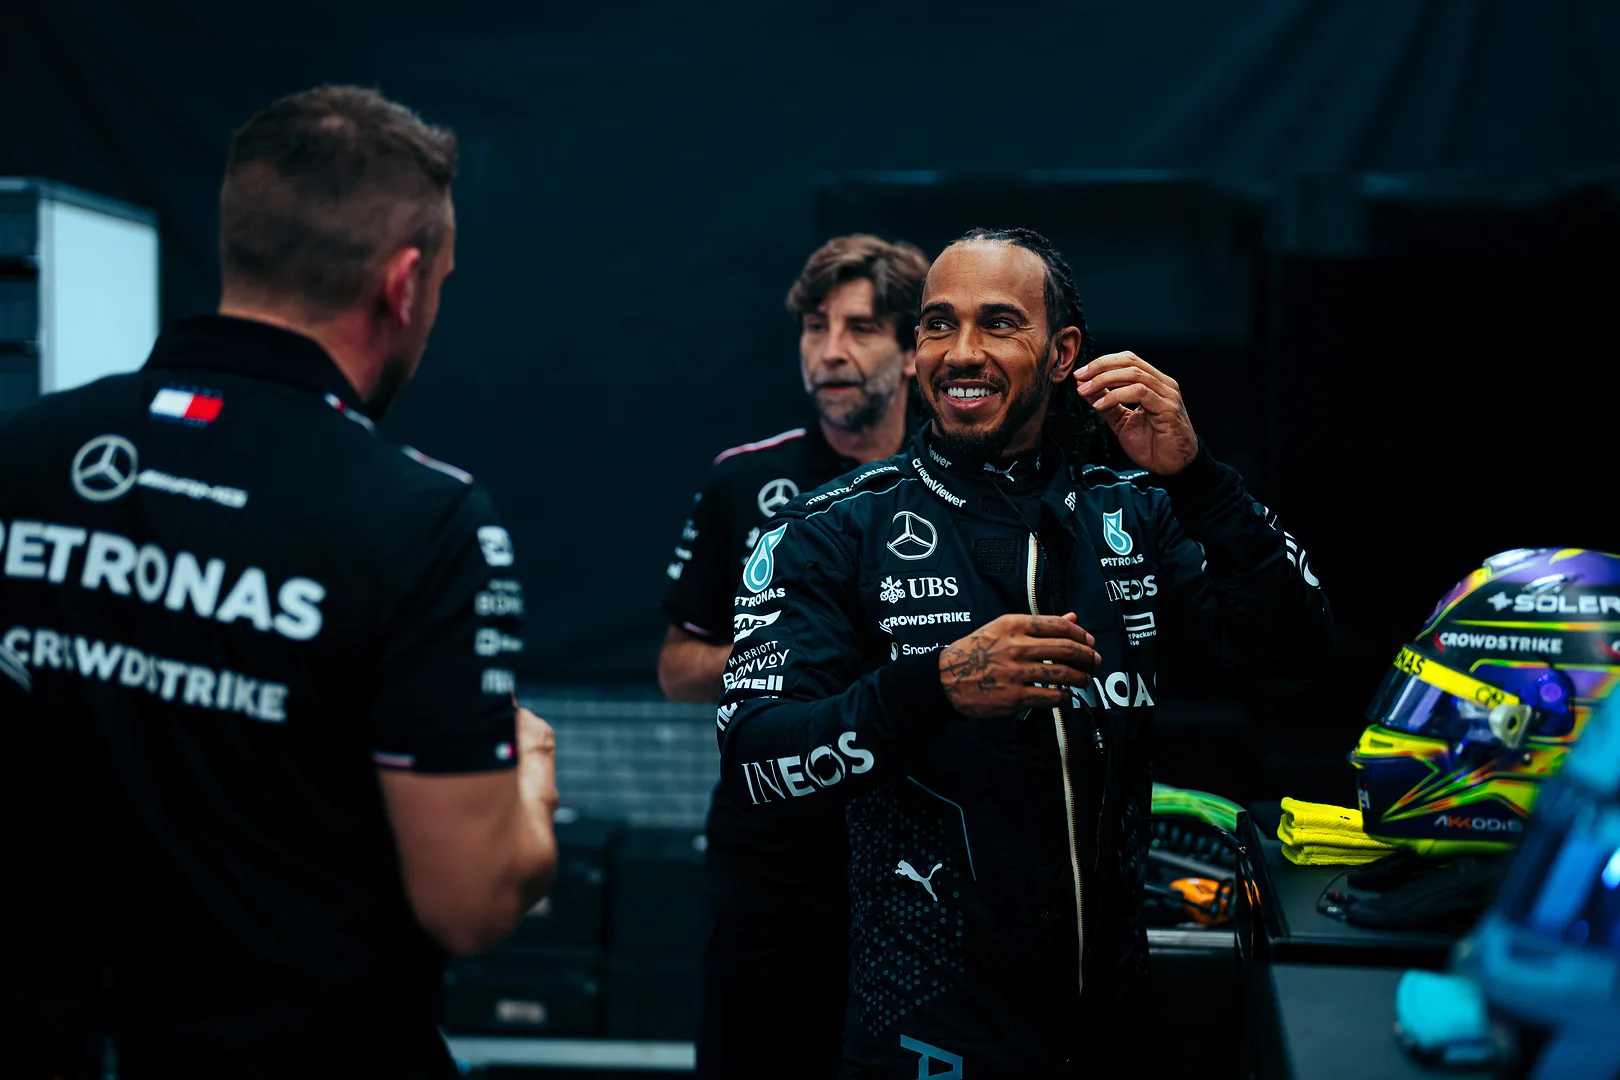 A Mercedesre várhatóan kellemetlen meglepetések várnak Hamilton számára idén